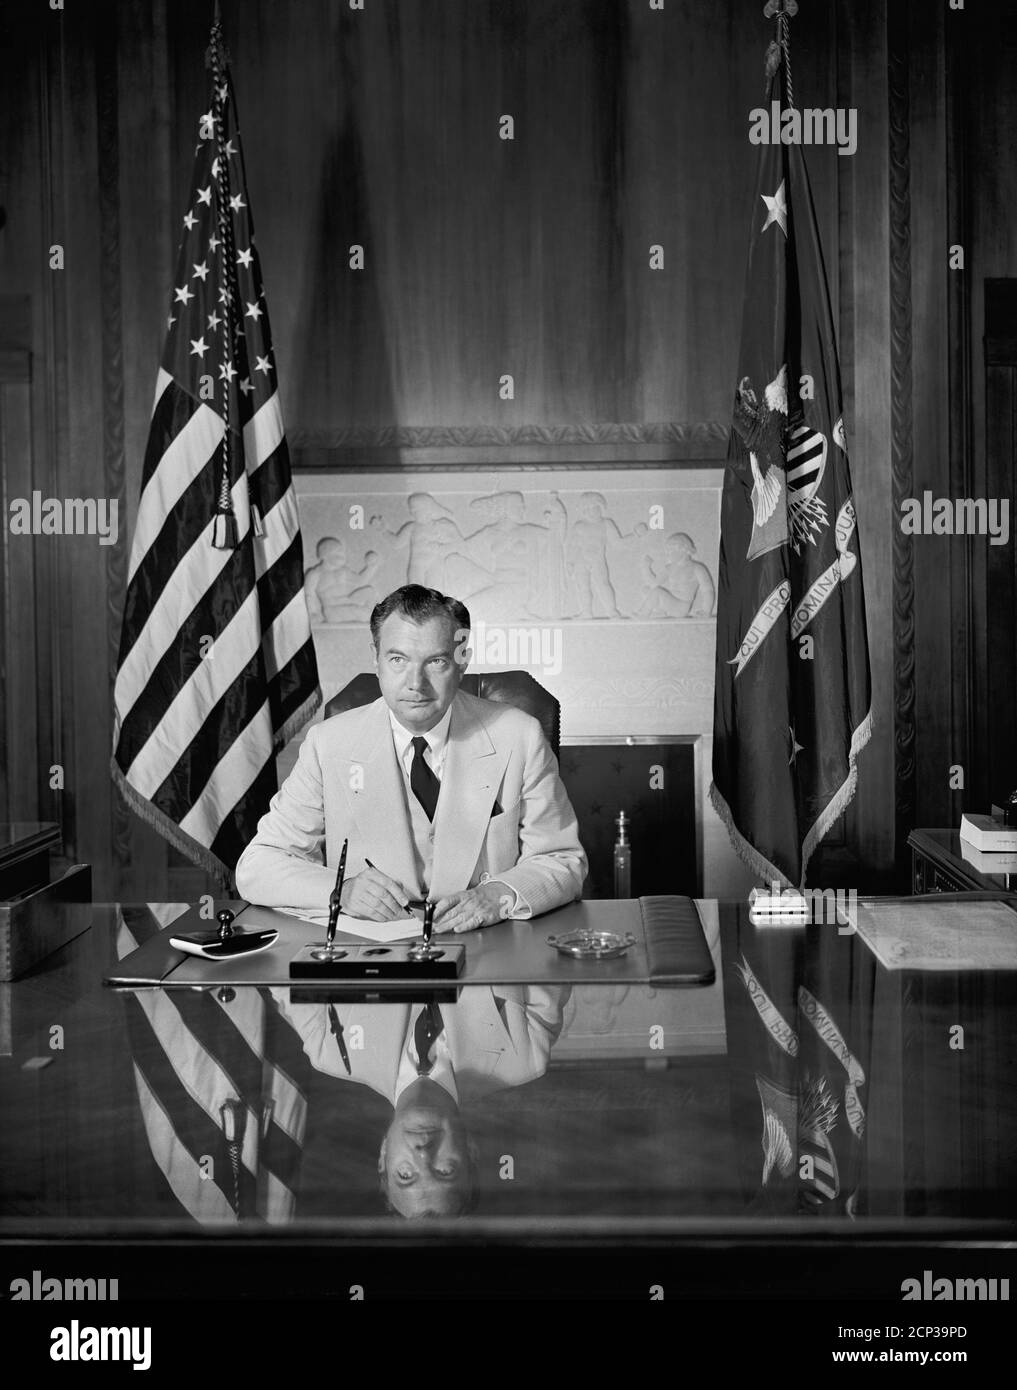 Avvocato generale statunitense Robert H. Jackson, Ritratto seduto alla scrivania, Washington, D.C., USA, Harris & Ewing, luglio 1940 Foto Stock